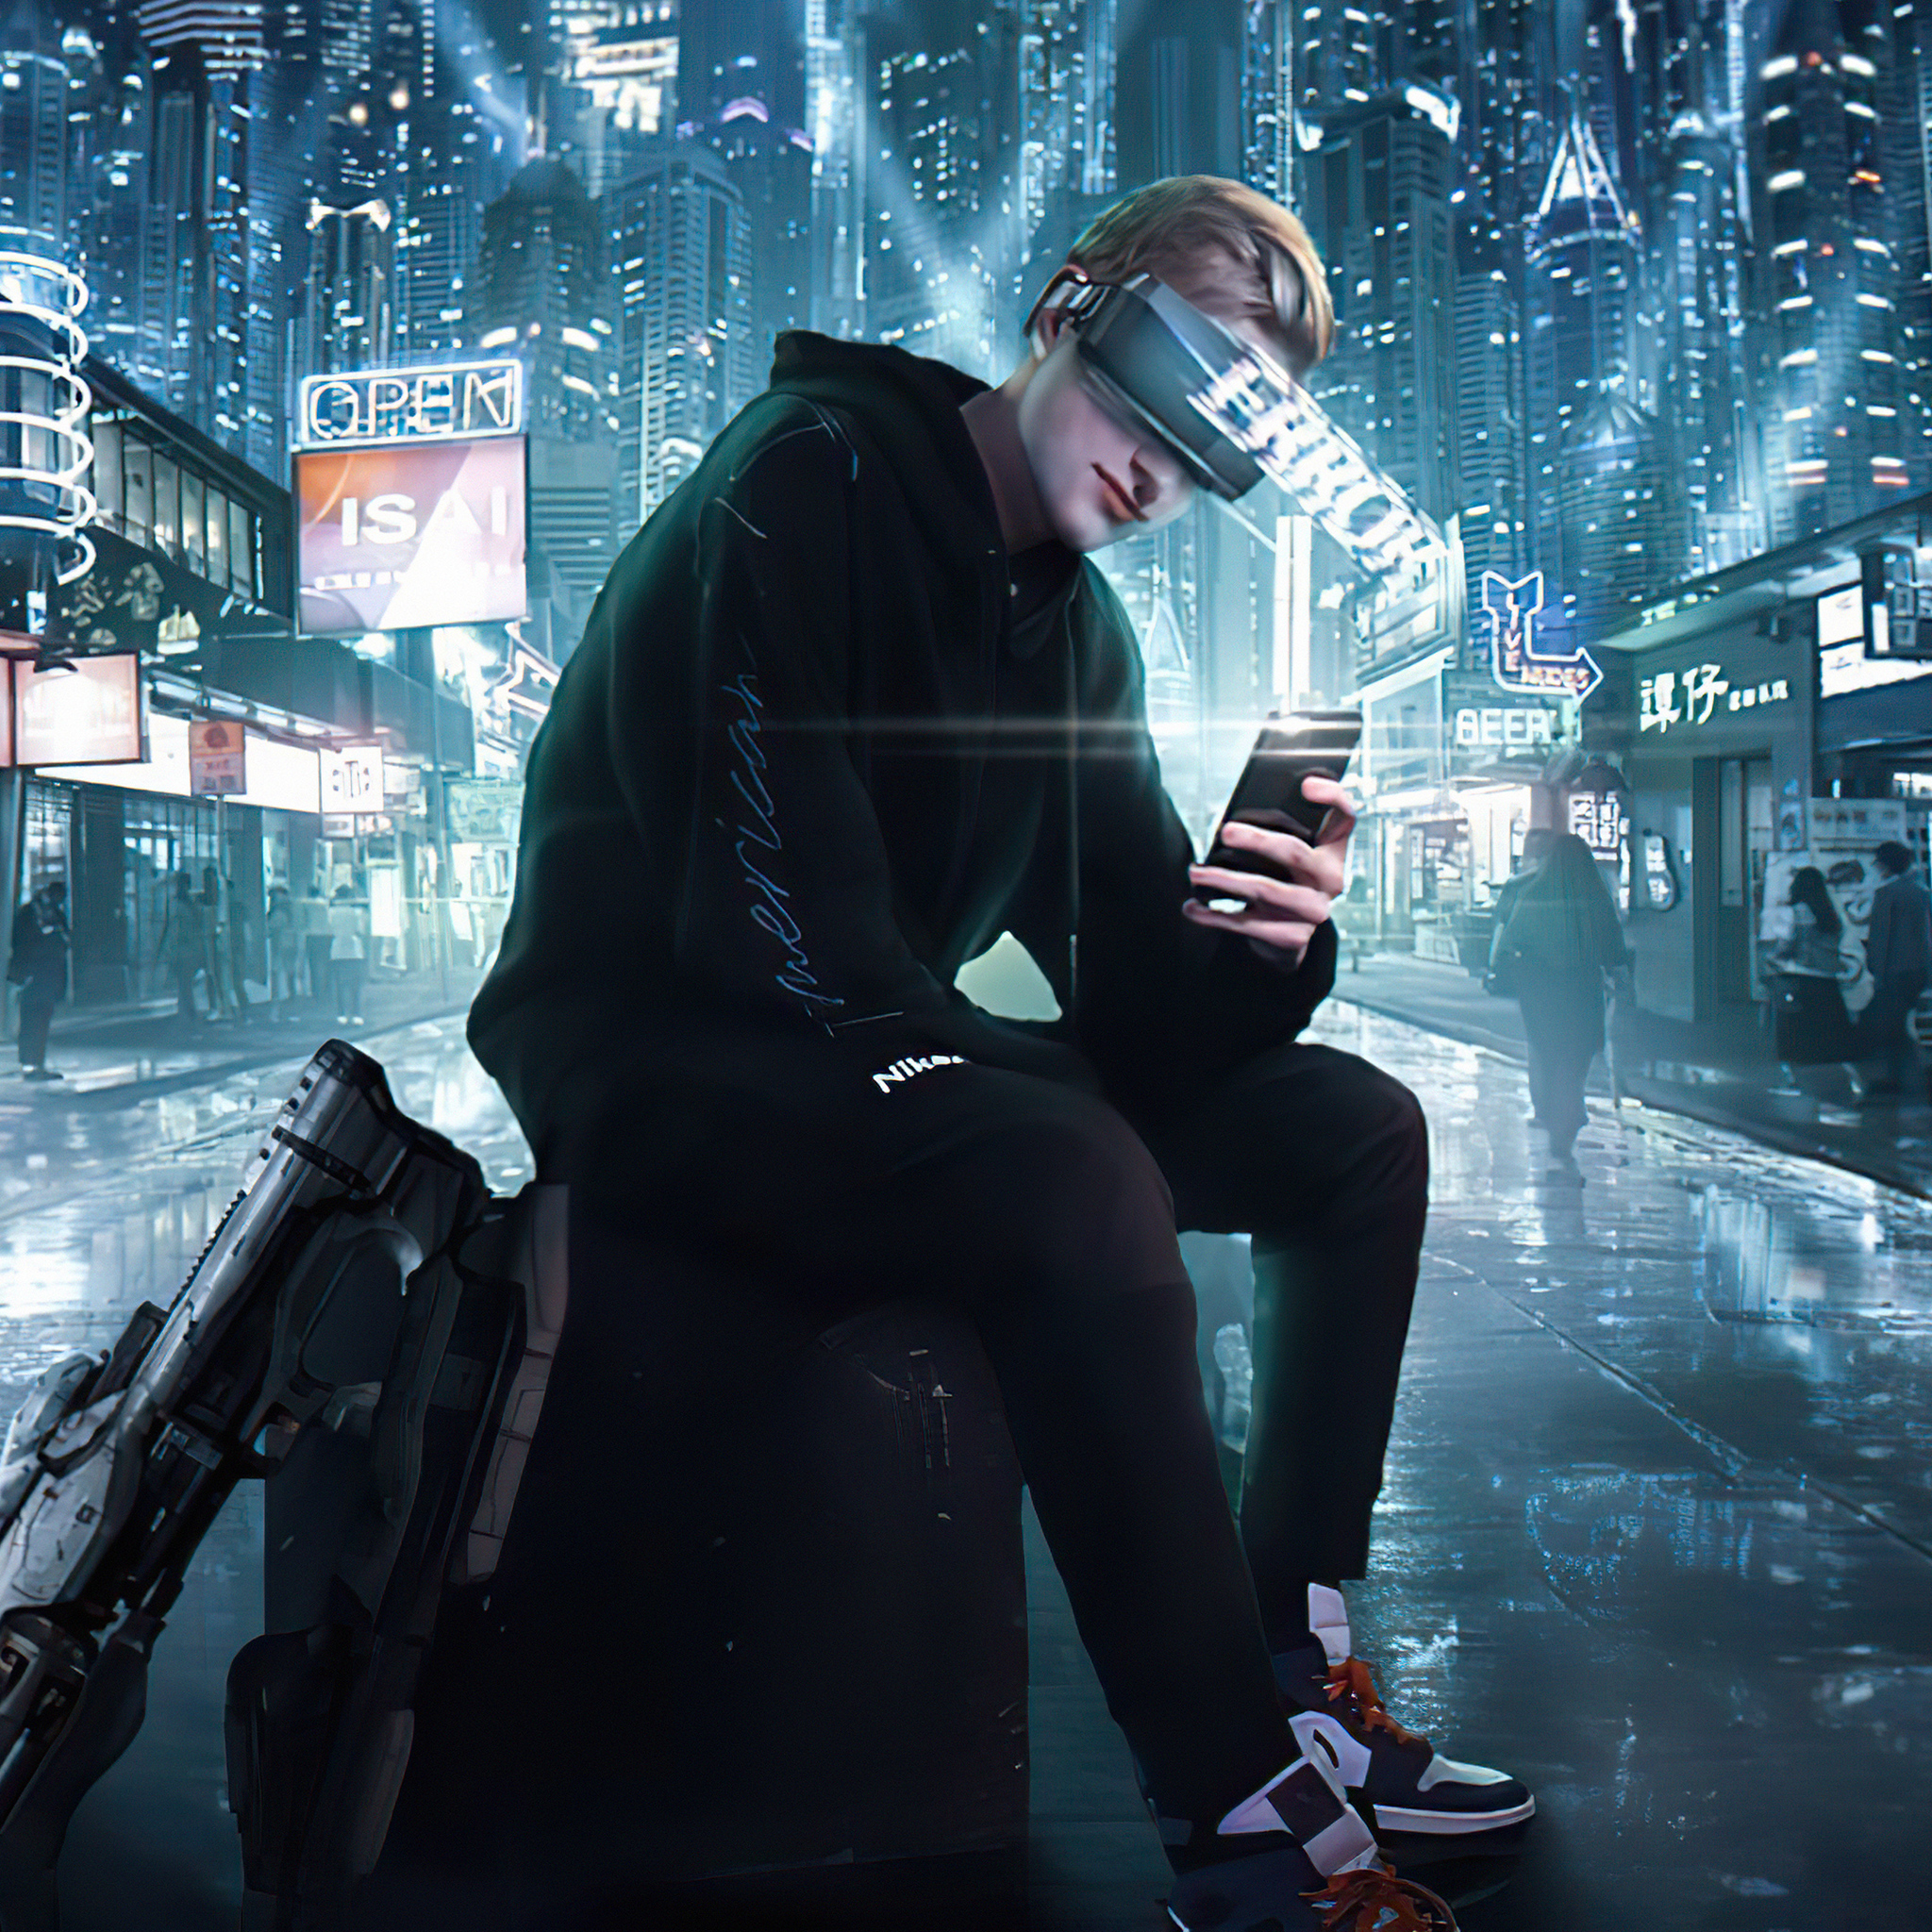 Alone Cyberpunk Boy In City Wallpapers